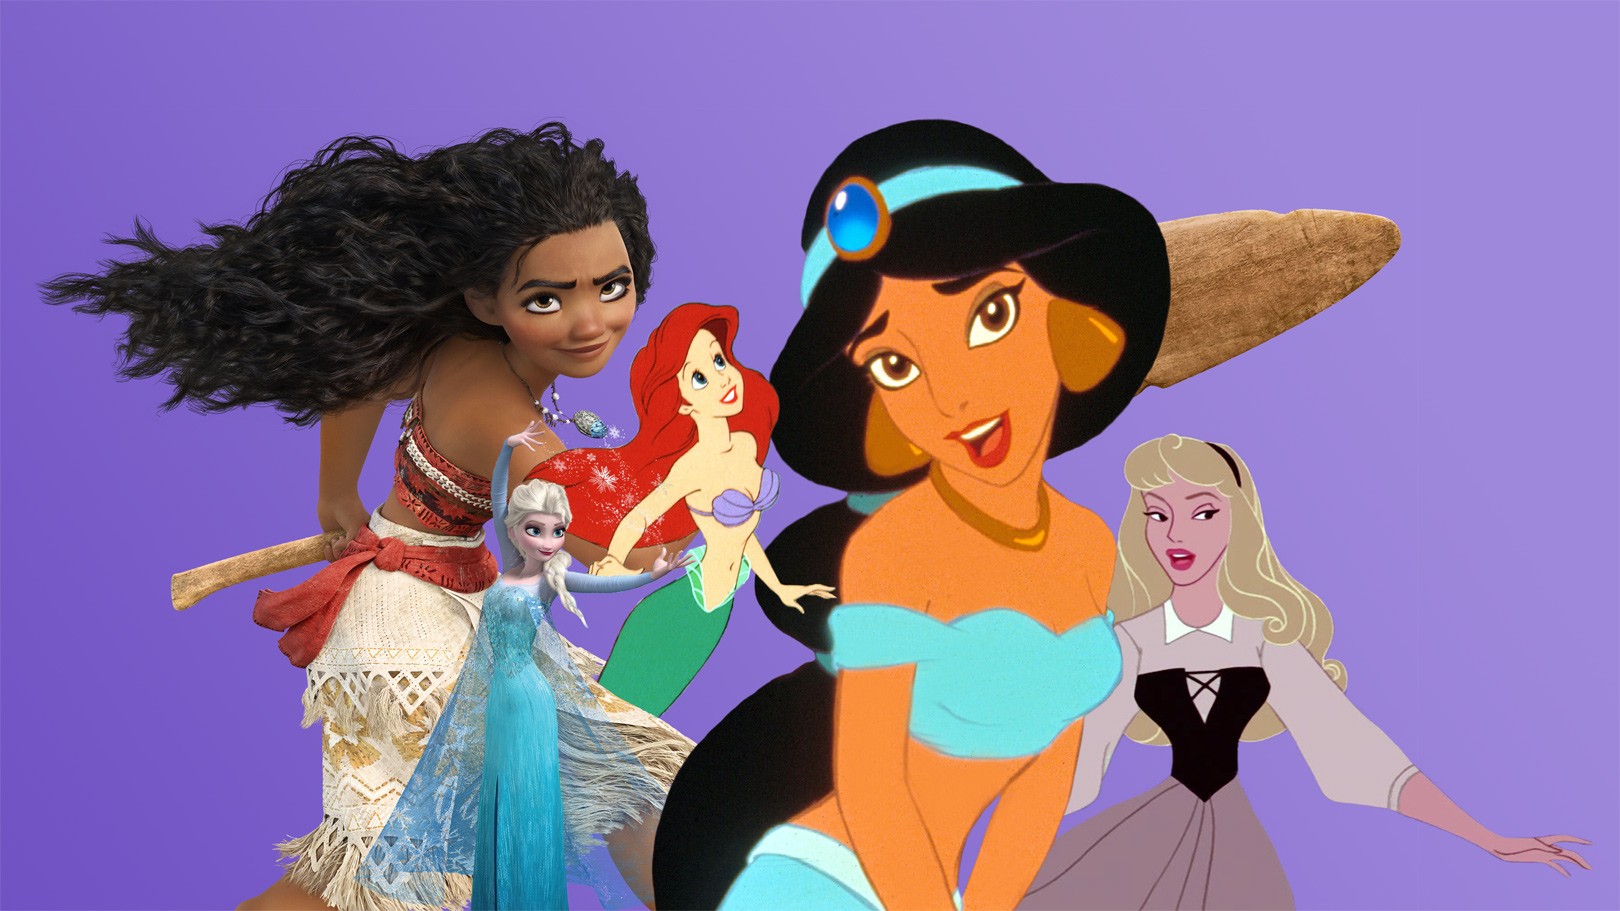 Disney Princess 16-Piece Dinnerware Set | Merida, Pocahontas, Moana, Snow White